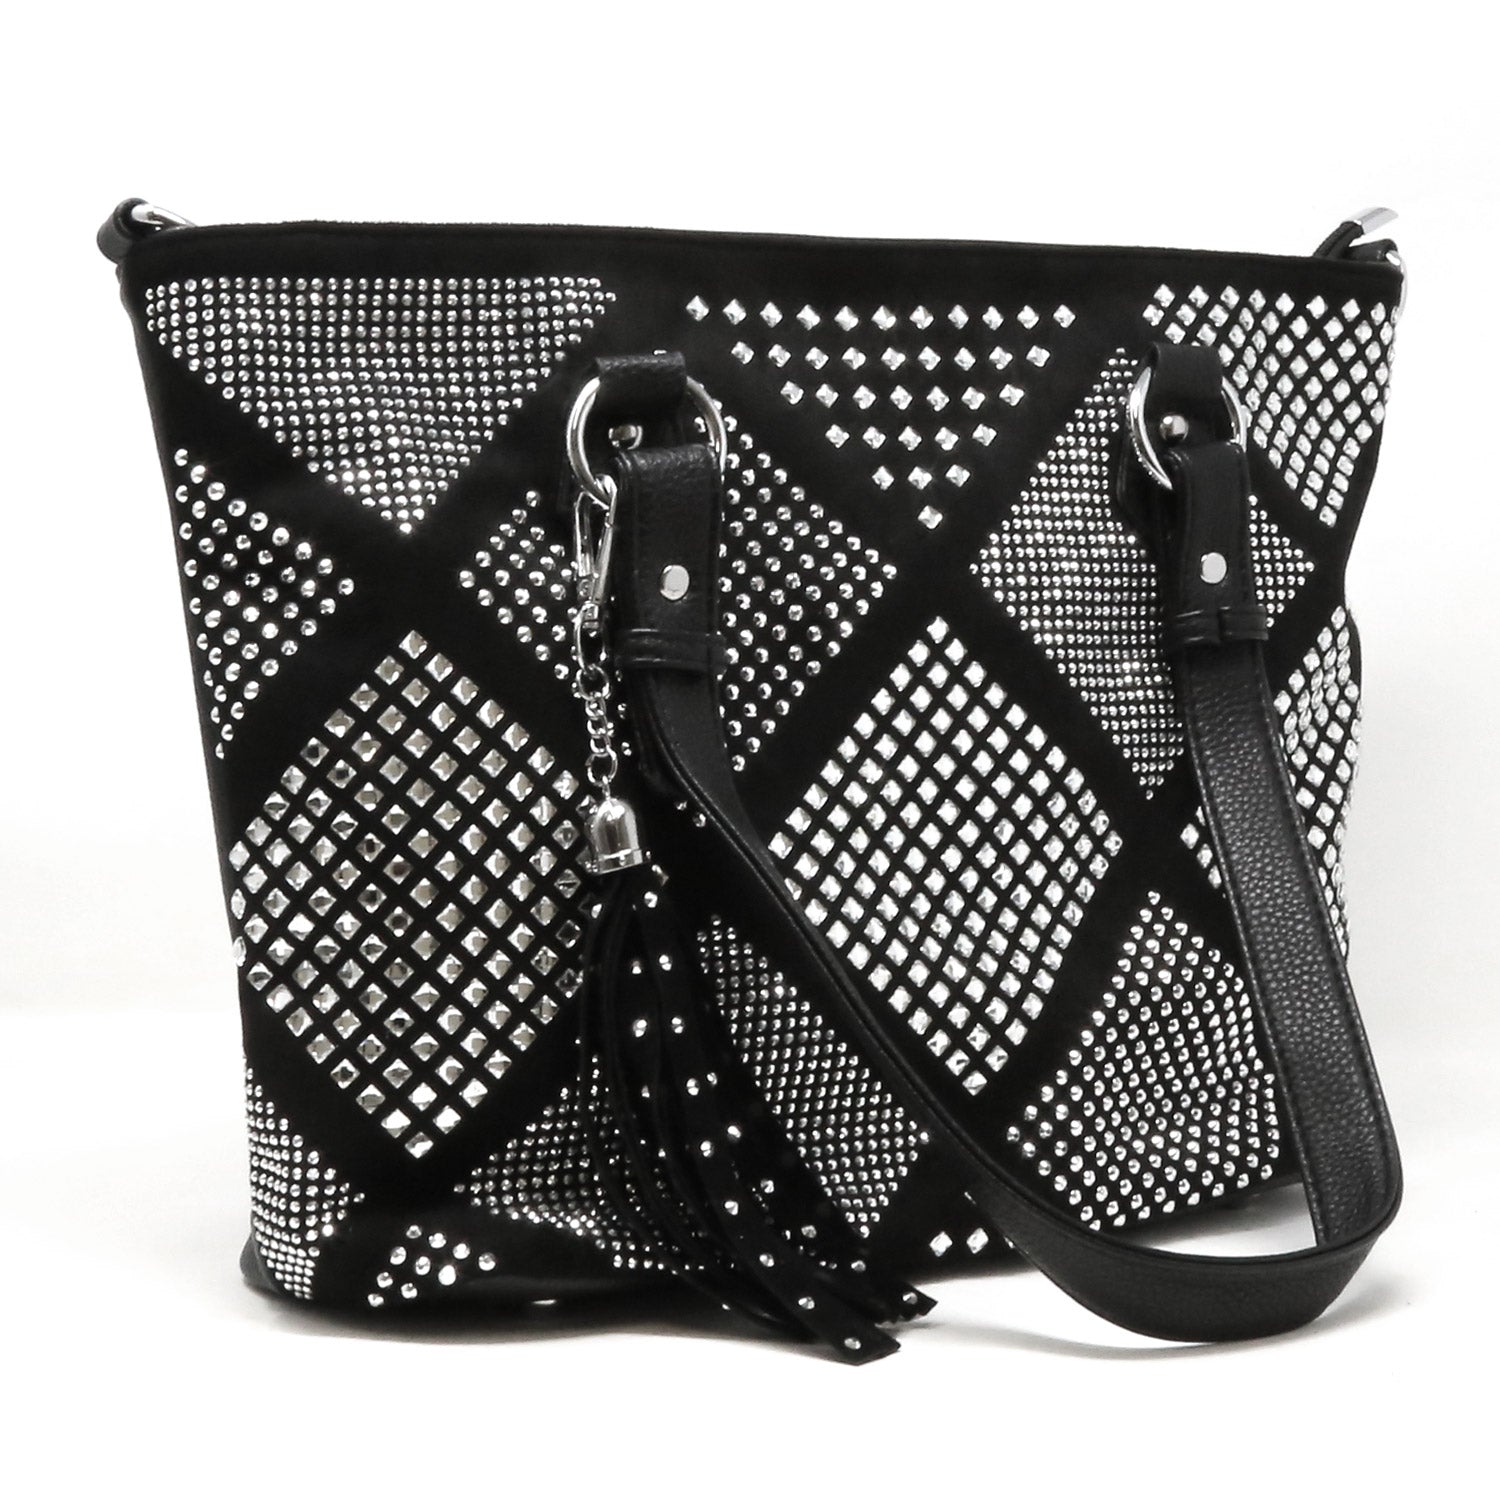 FH Diamond Pattern Shopper Style Tote Bag